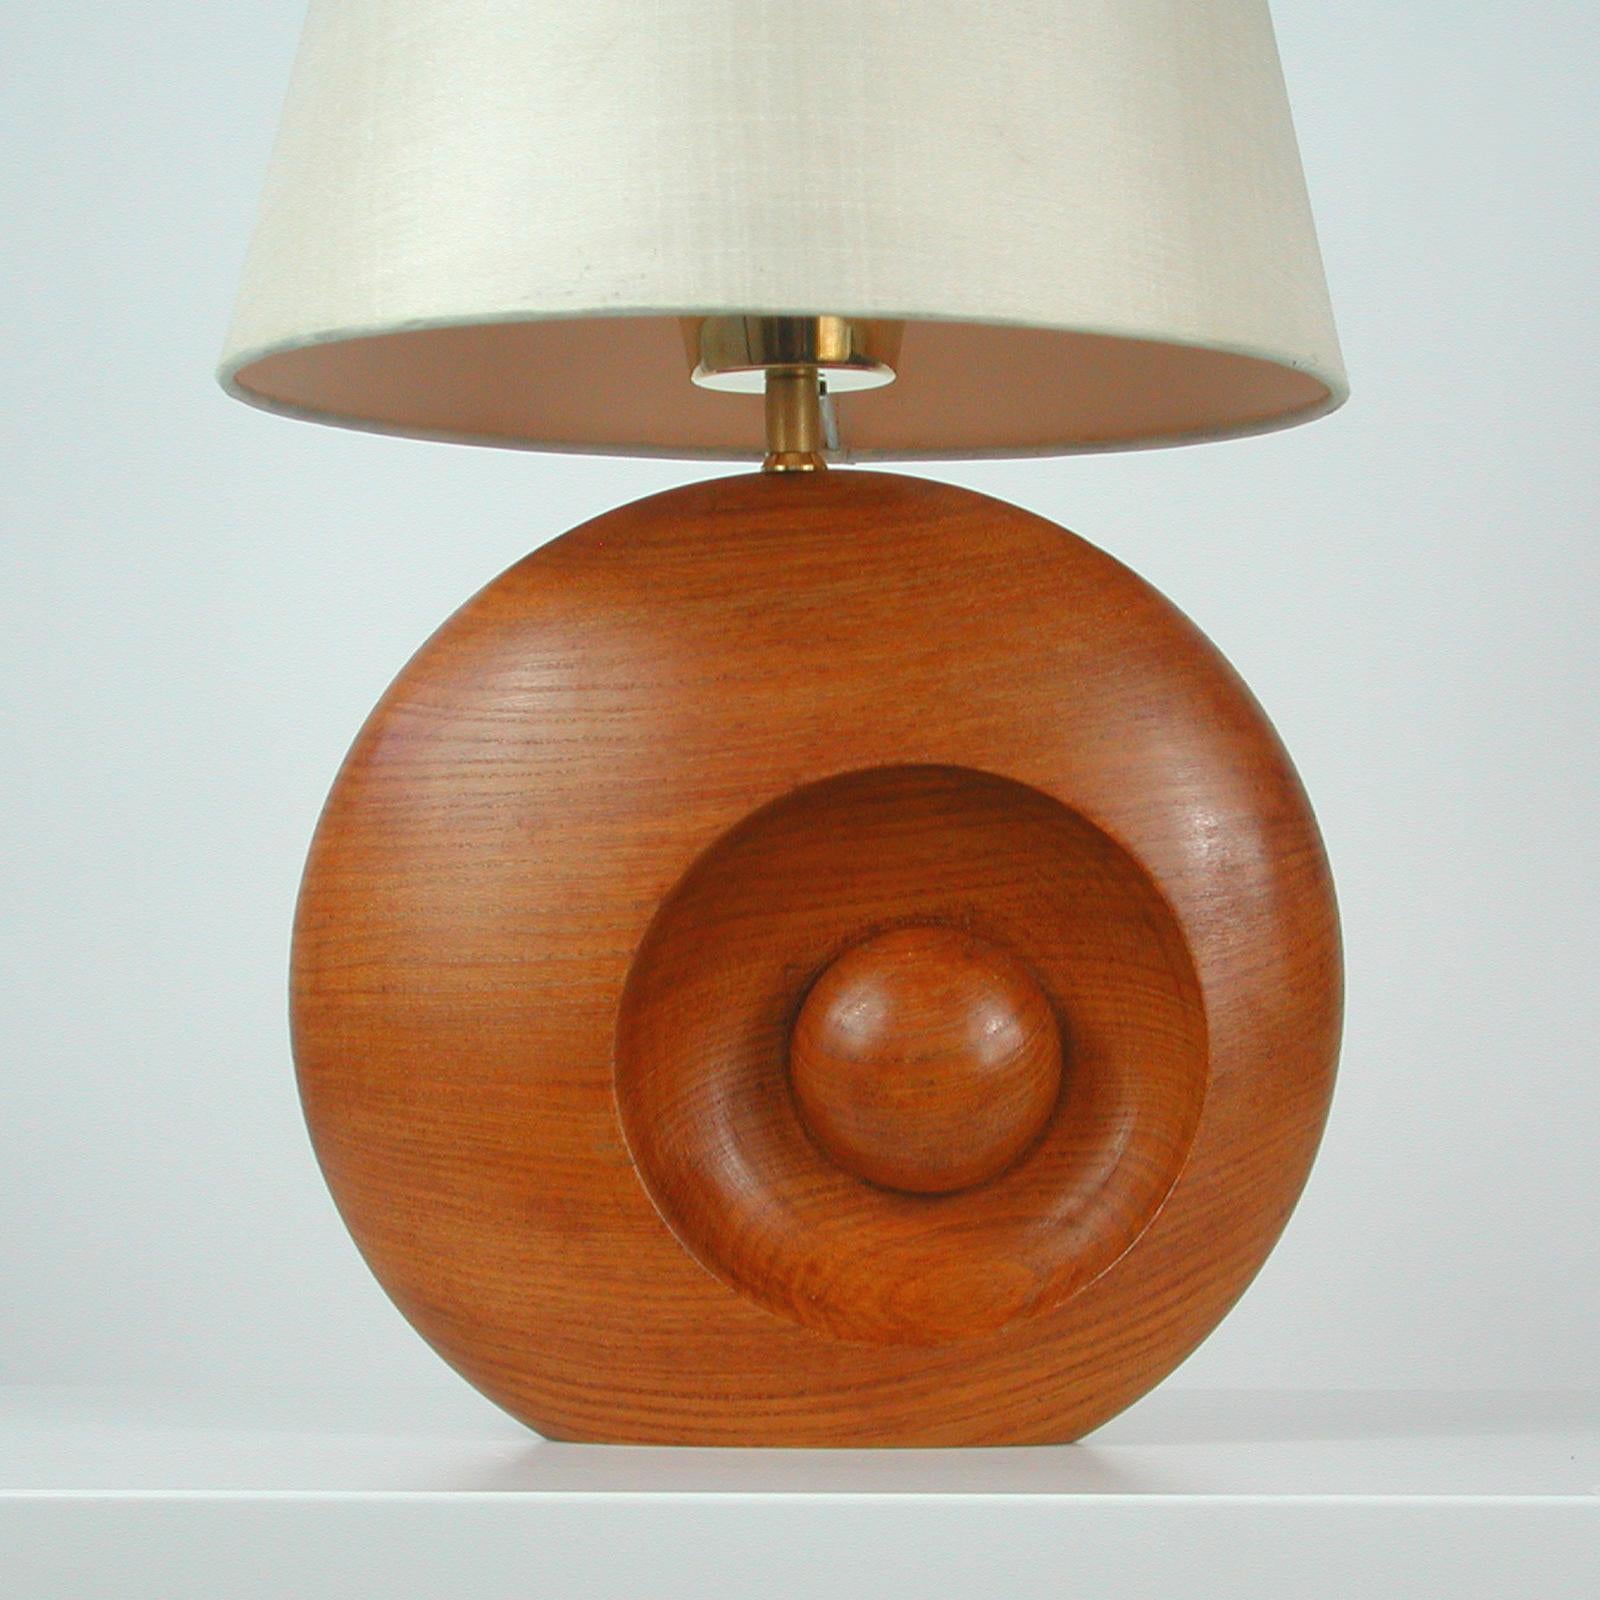 Cette impressionnante lampe de table a été conçue et fabriquée en Suède dans les années 1960. Il présente une base ronde en teck avec un support d'ampoule en laiton.

L'état général est très bon. La lampe a été recâblée avec un nouveau cordon en